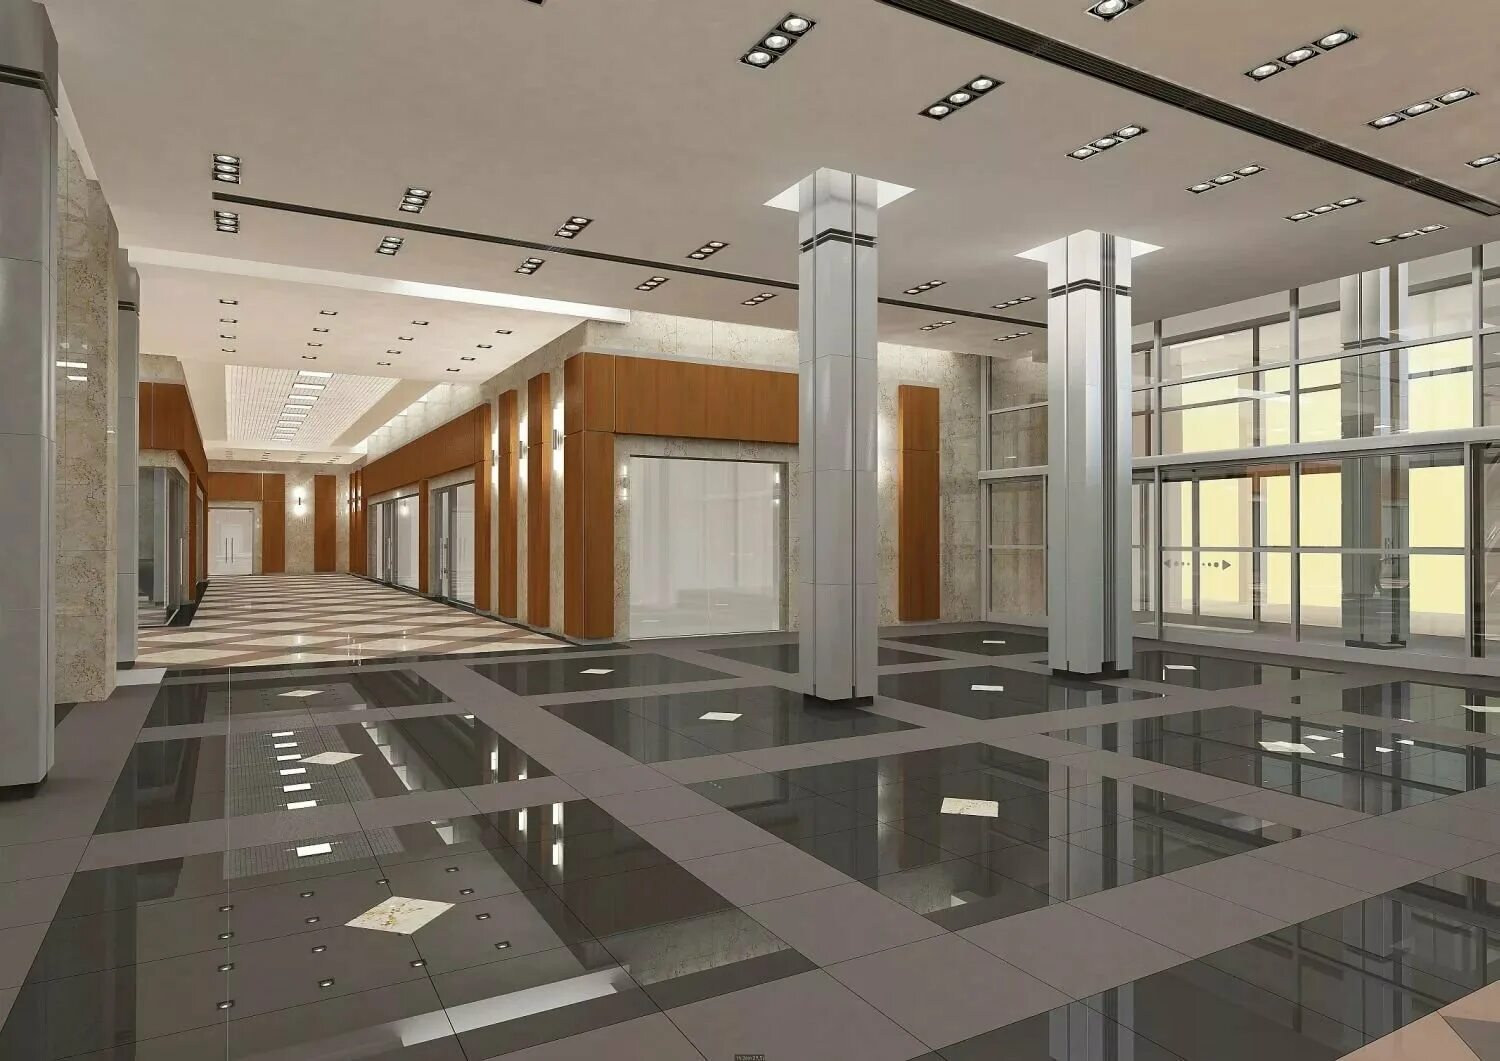 Мер хол. Интерьер общественного здания. Керамогранит для общественных помещений. Интерьер холла в административном здании. Интерьер вестибюля.